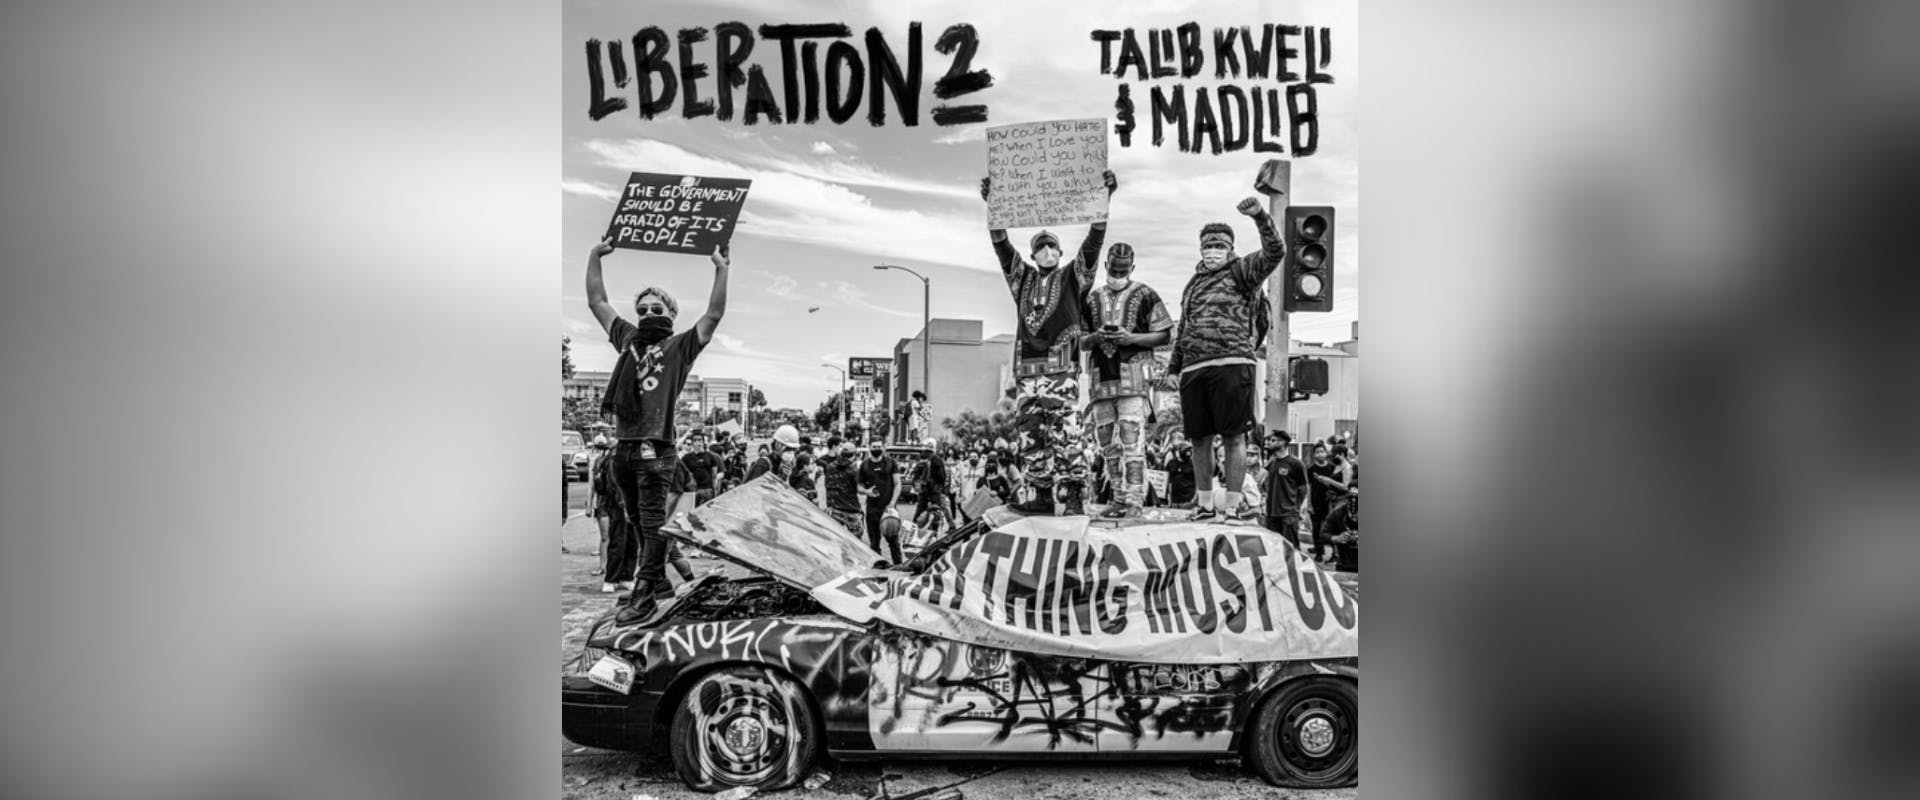 Talib Kweli and Madlib Drop New Album 'Liberation 2'